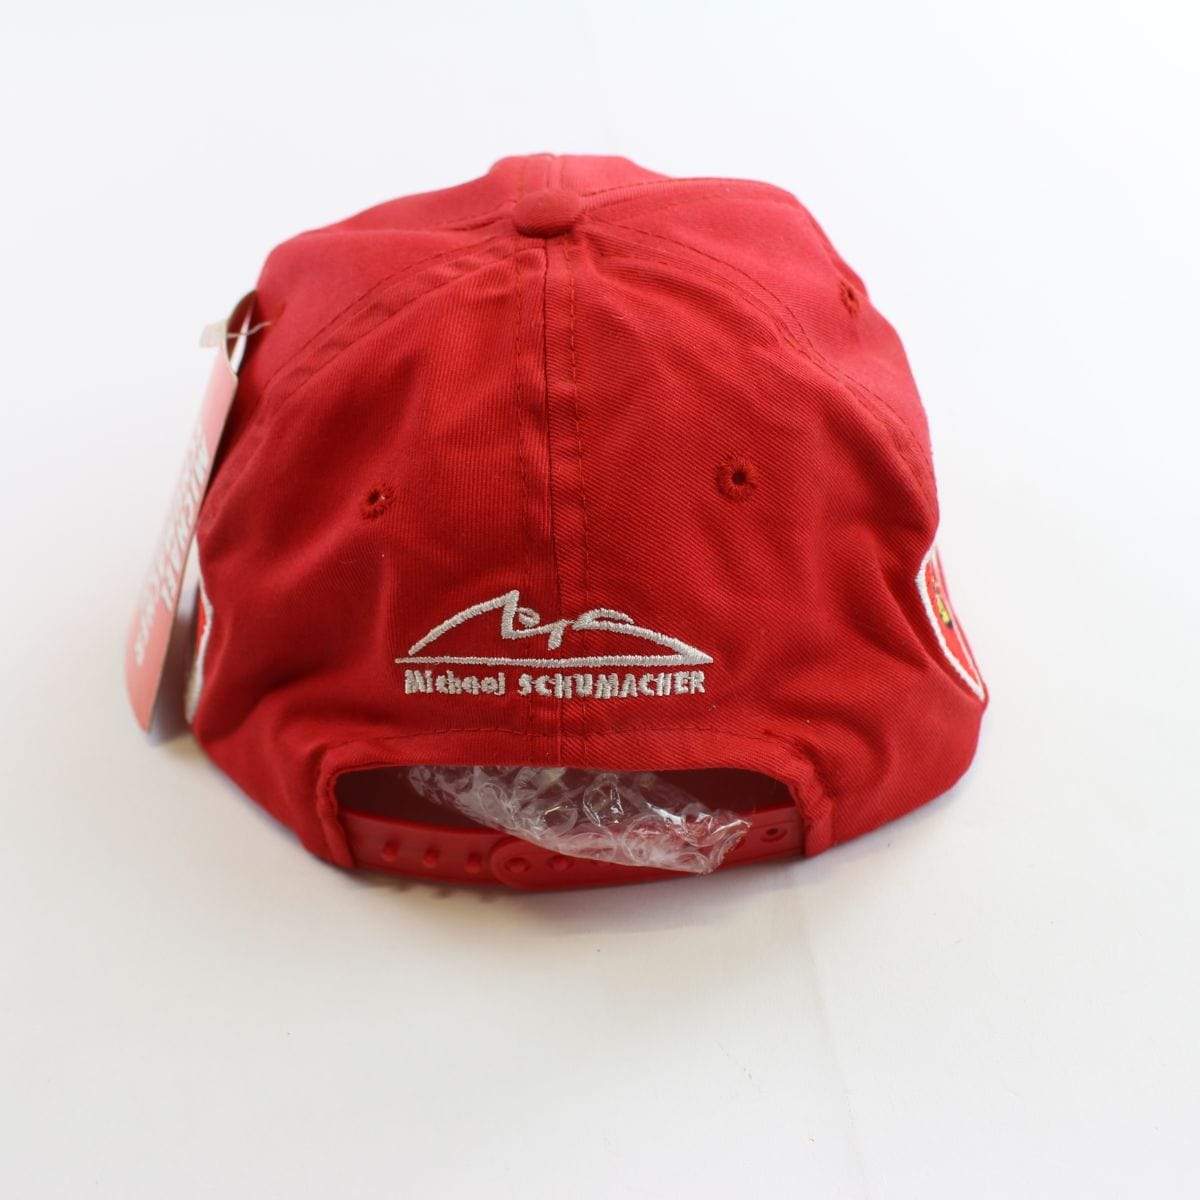 Ferrari Logo hat set of 3 - SaruGeneral